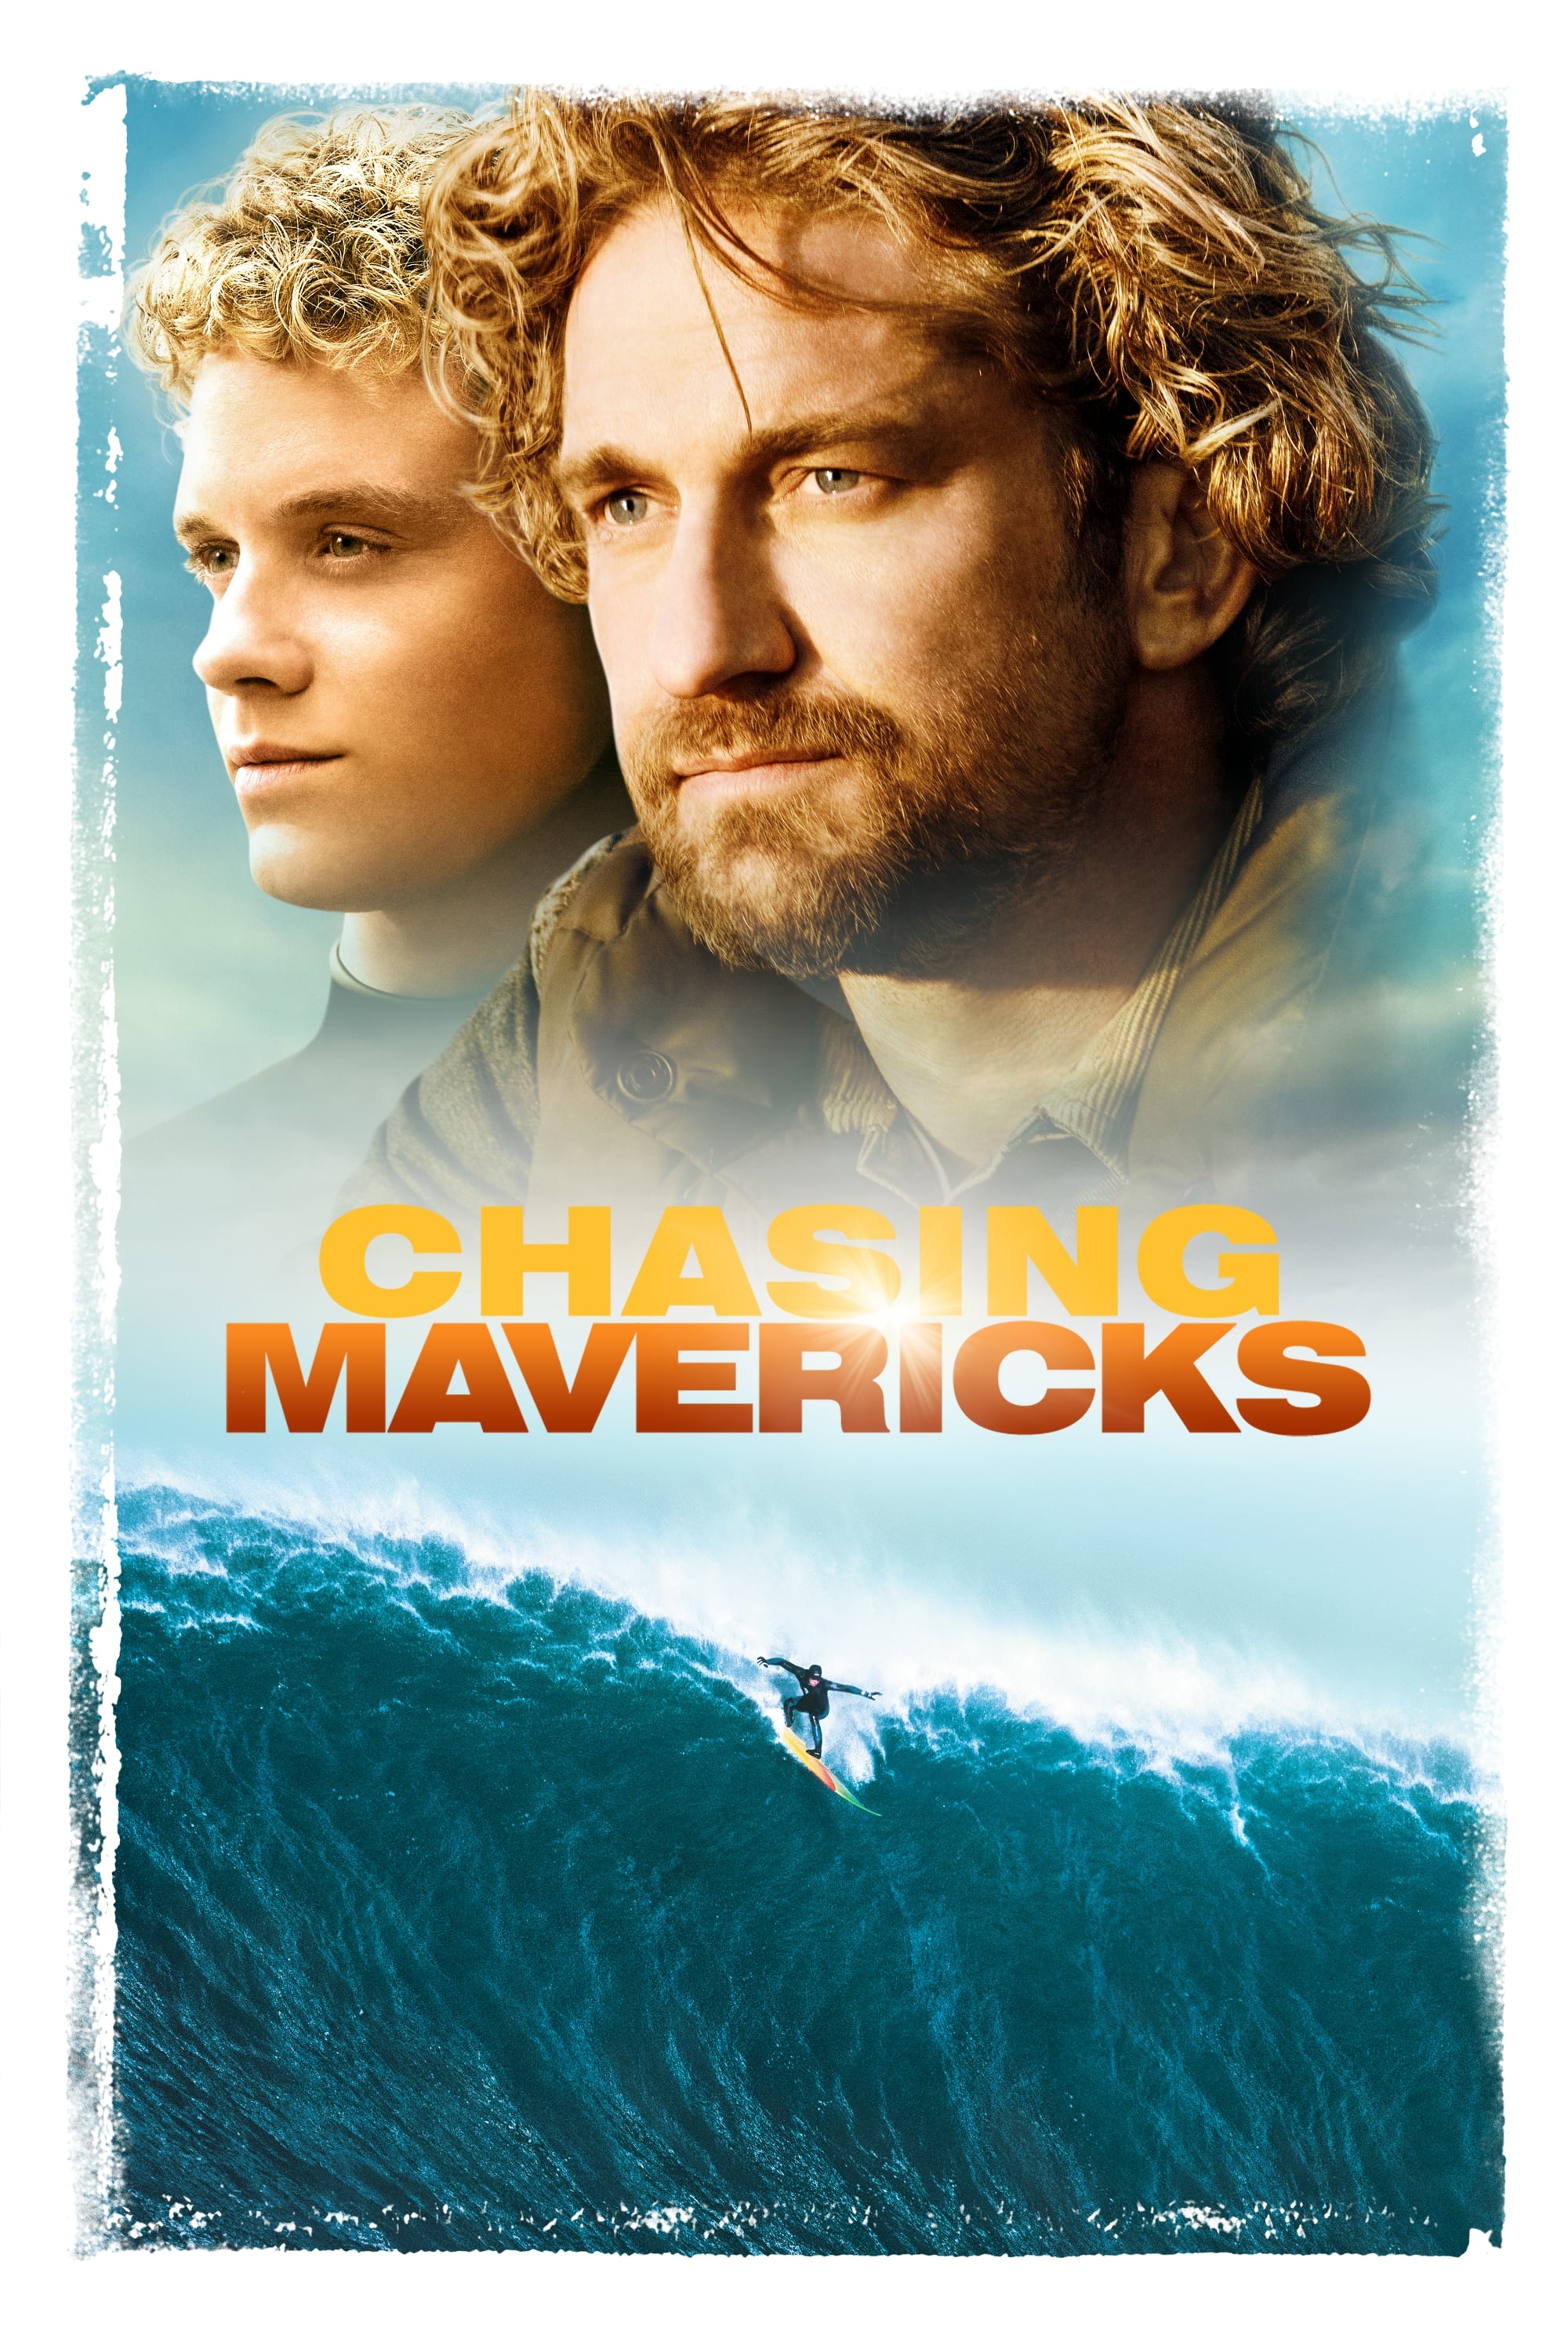 chasing mavericks movie review